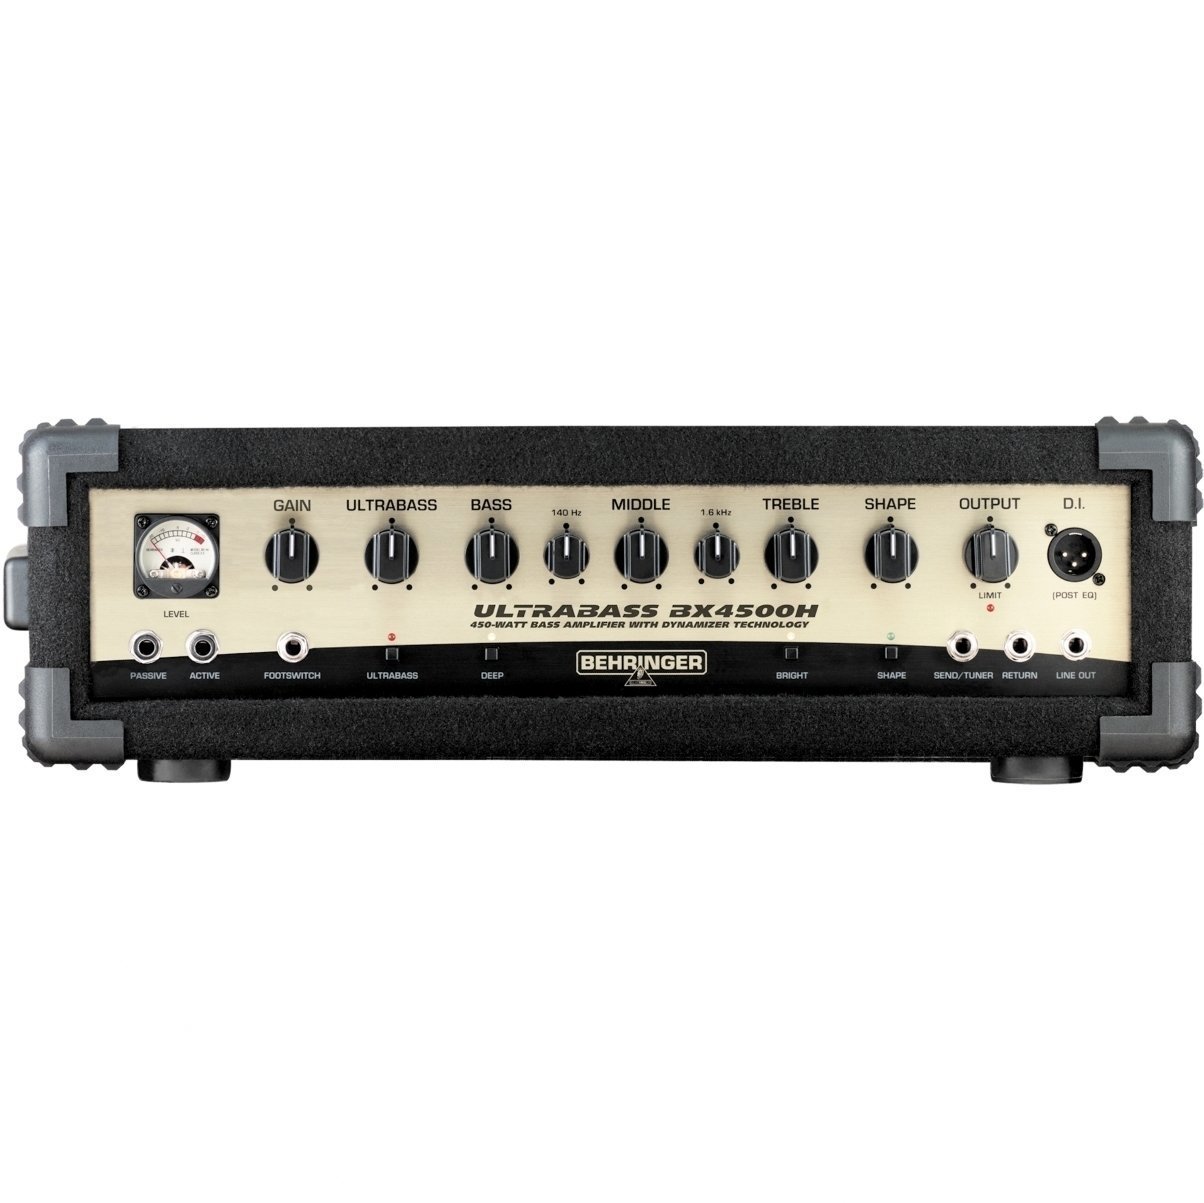 Solid-State Bass Amplifier Behringer BX 4500 H ULTRABASS